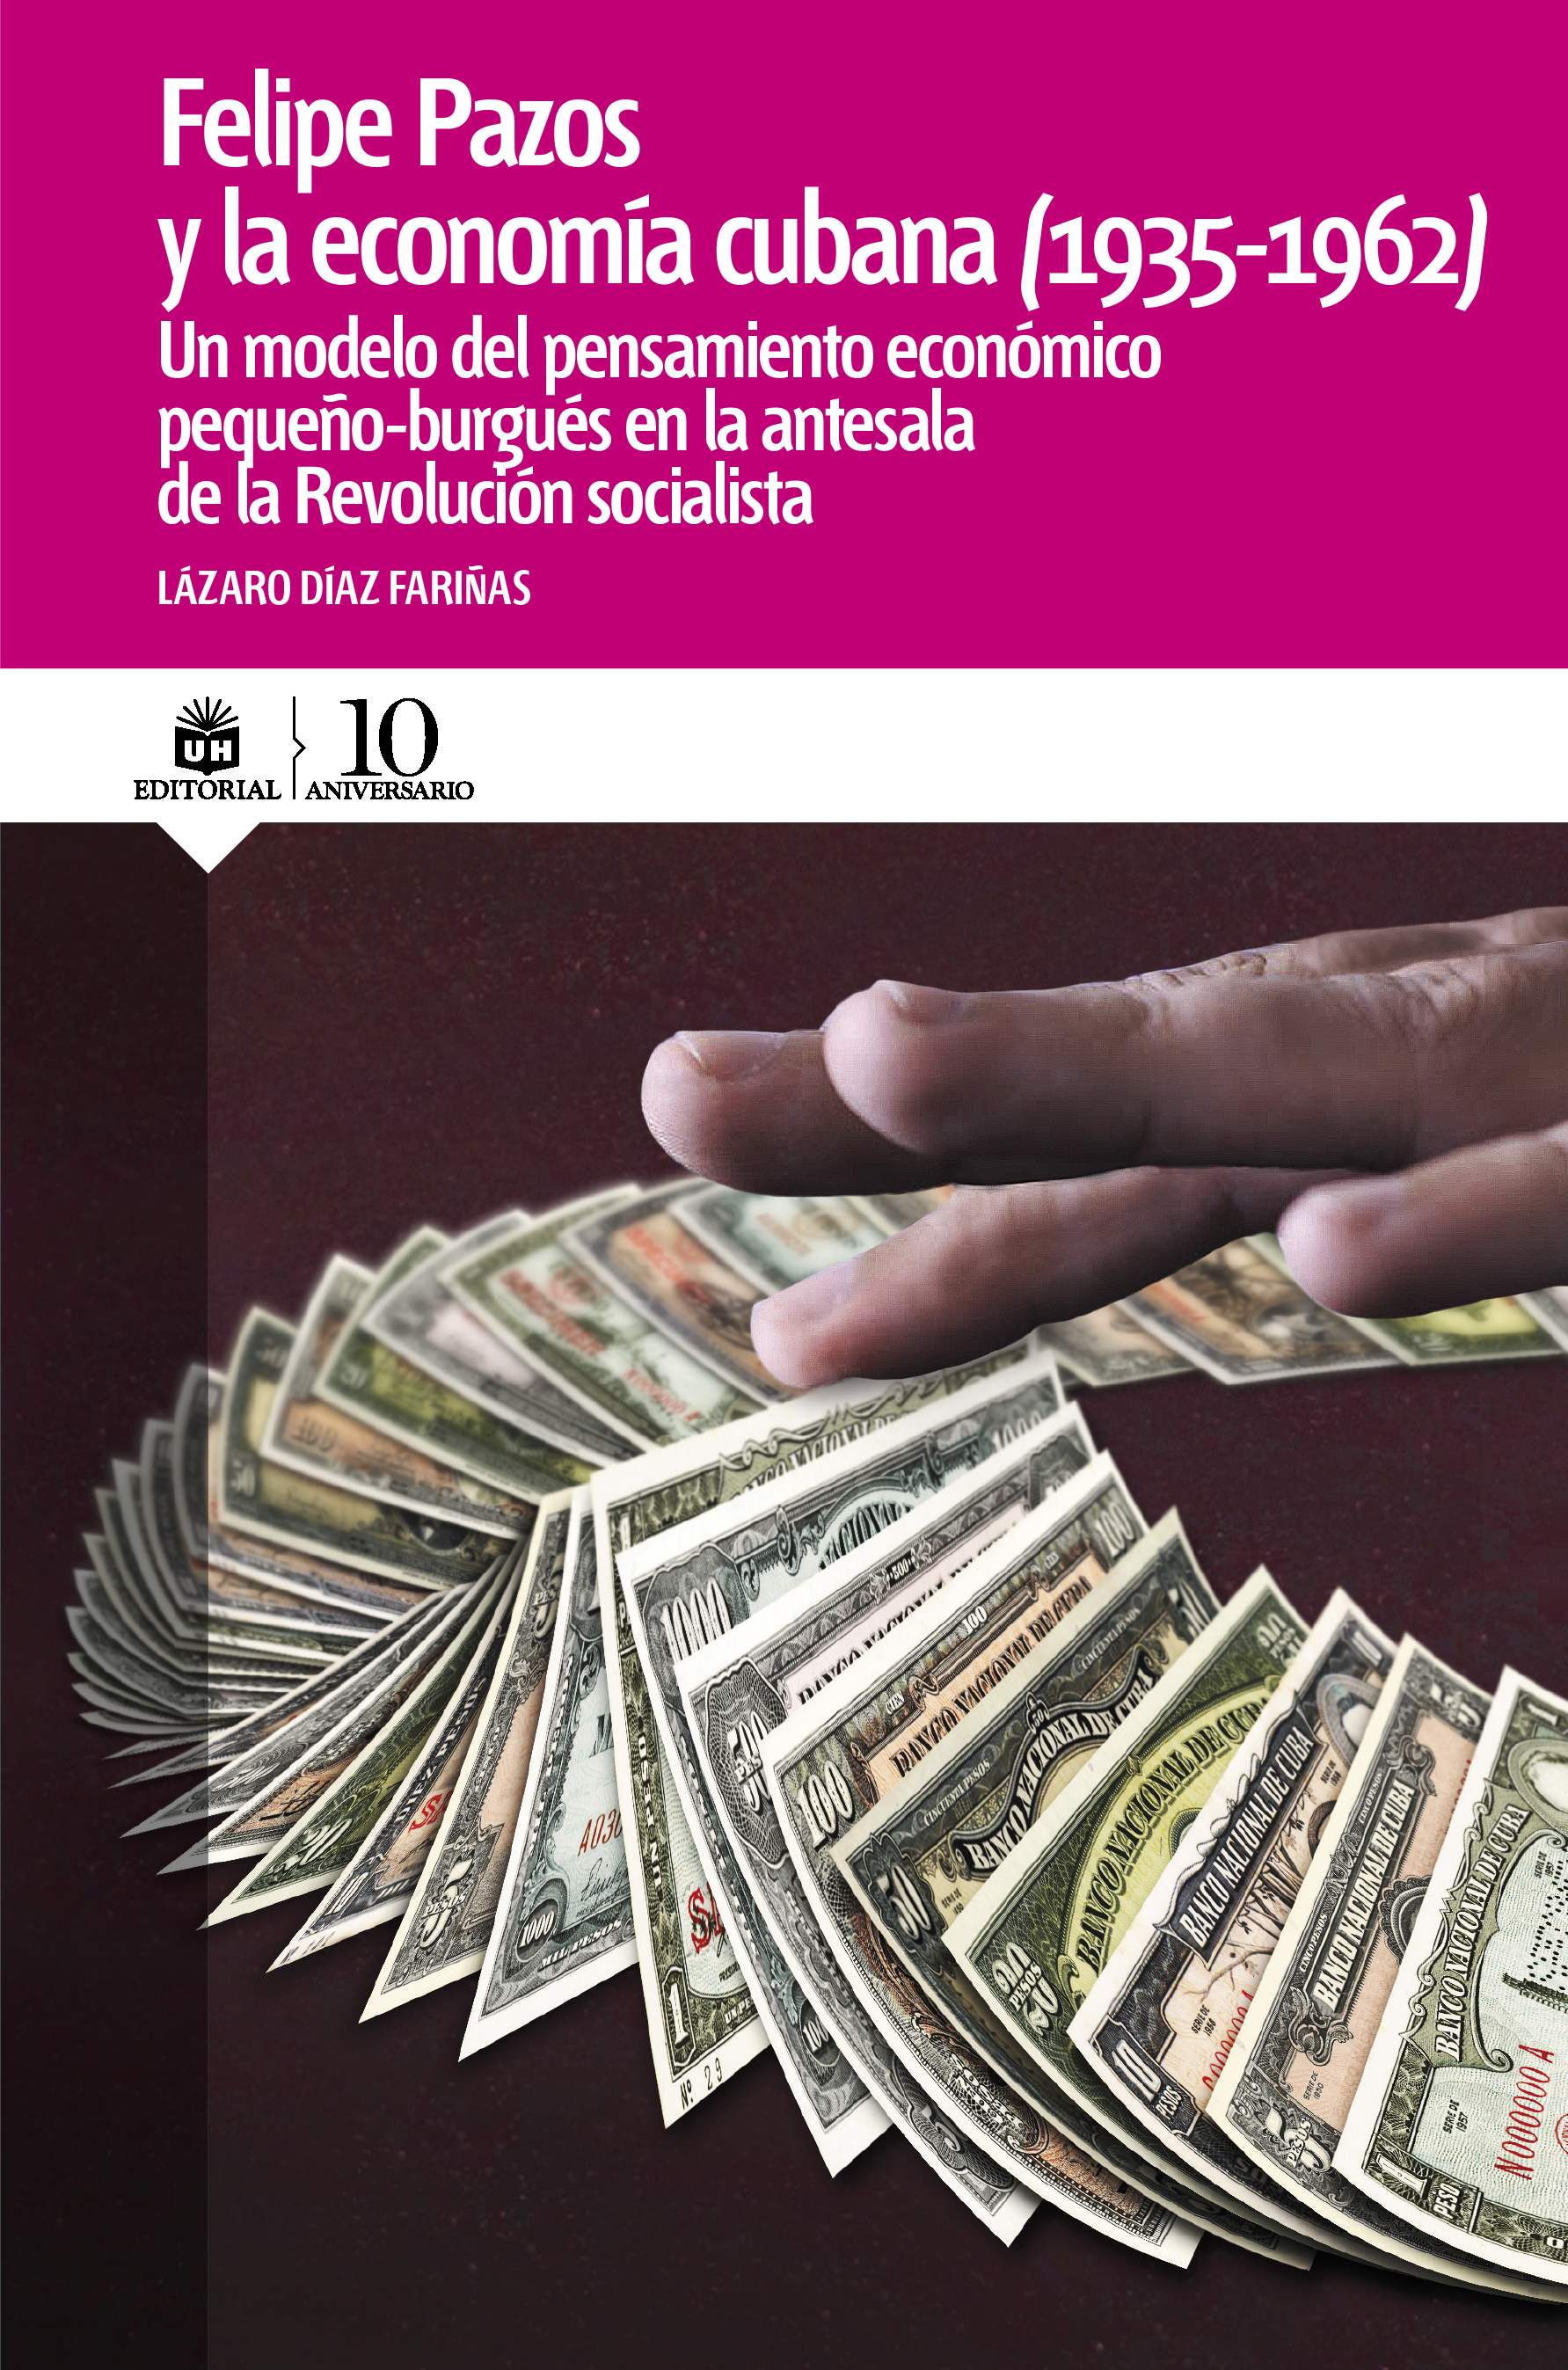  Felipe Pazos y la economía cubana (1935-1962). Un modelo del pensamiento económico pequeño-burgués en la antesala de la revolución socialista. (Ebook)